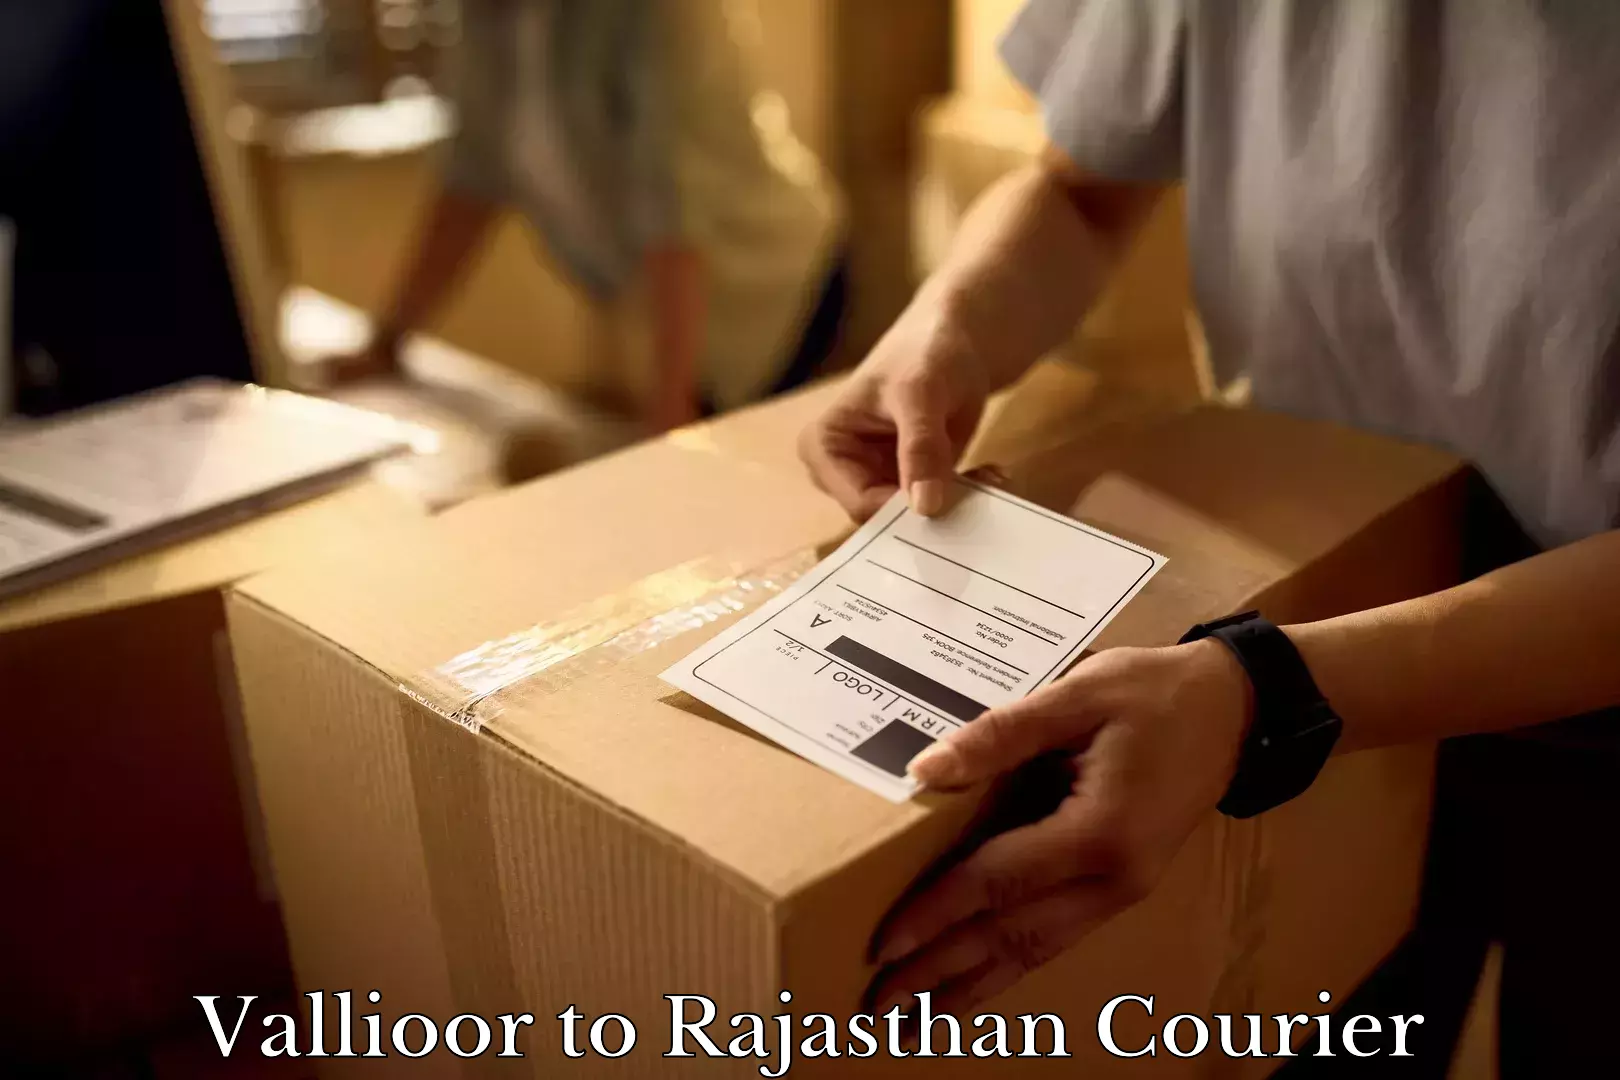 Furniture moving experts Vallioor to Bari Dholpur